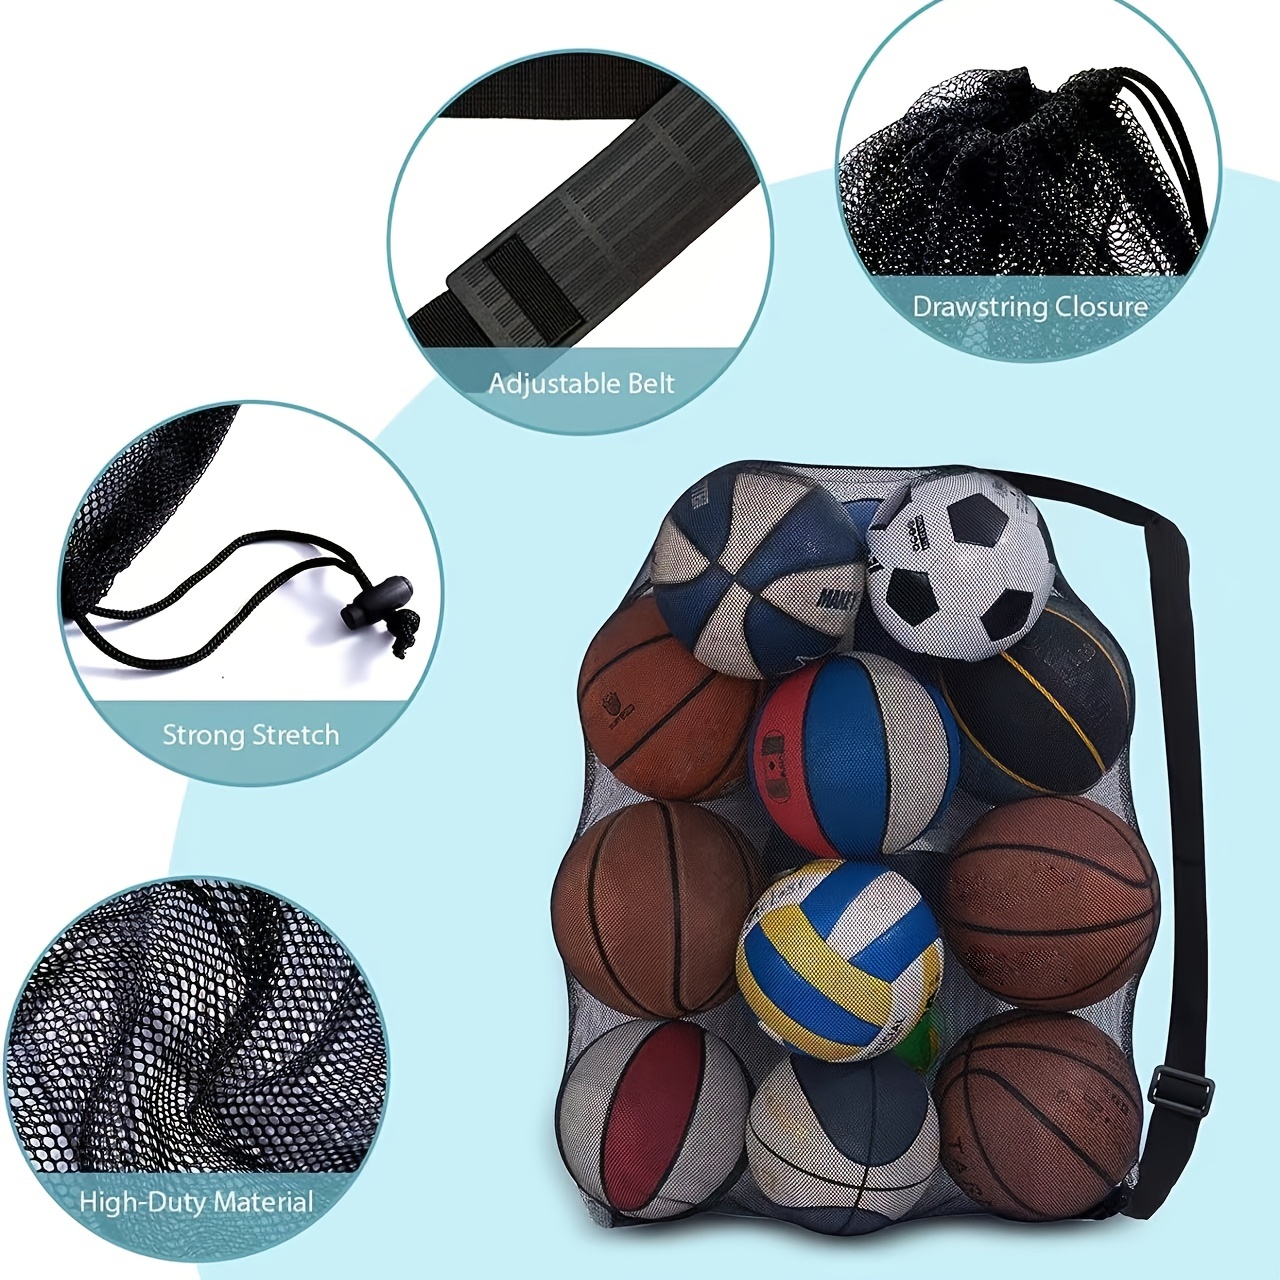 Bolsa de equipo de malla extra grande con cordón ajustable para 15 pelotas  de fútbol, netball, baloncesto, fútbol, bolsa de deporte